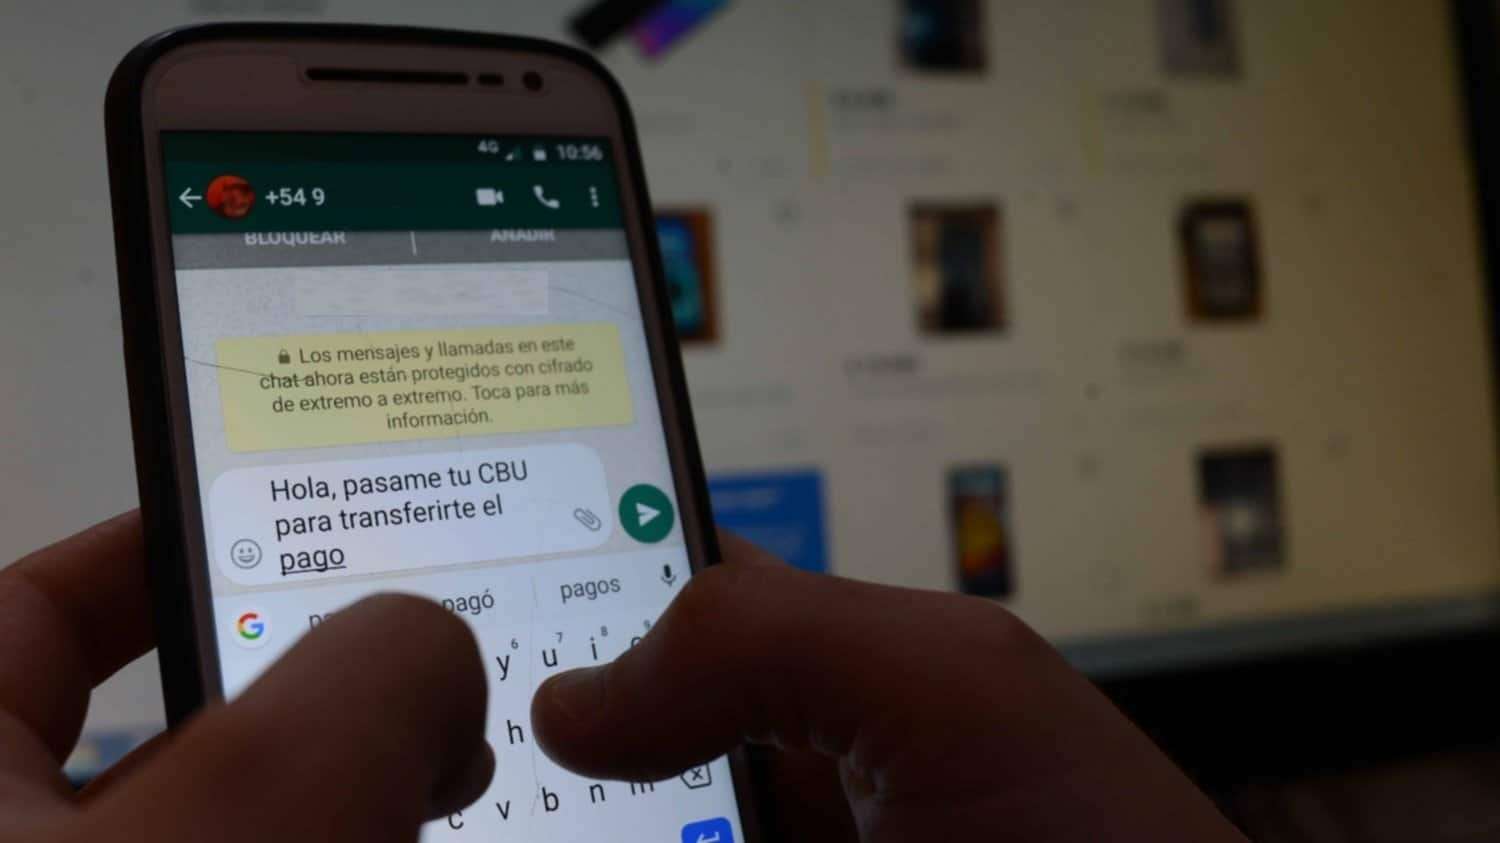 La Policía de Entre Ríos continúa su campaña de advertencia y alerta sobre las estafas virtuales